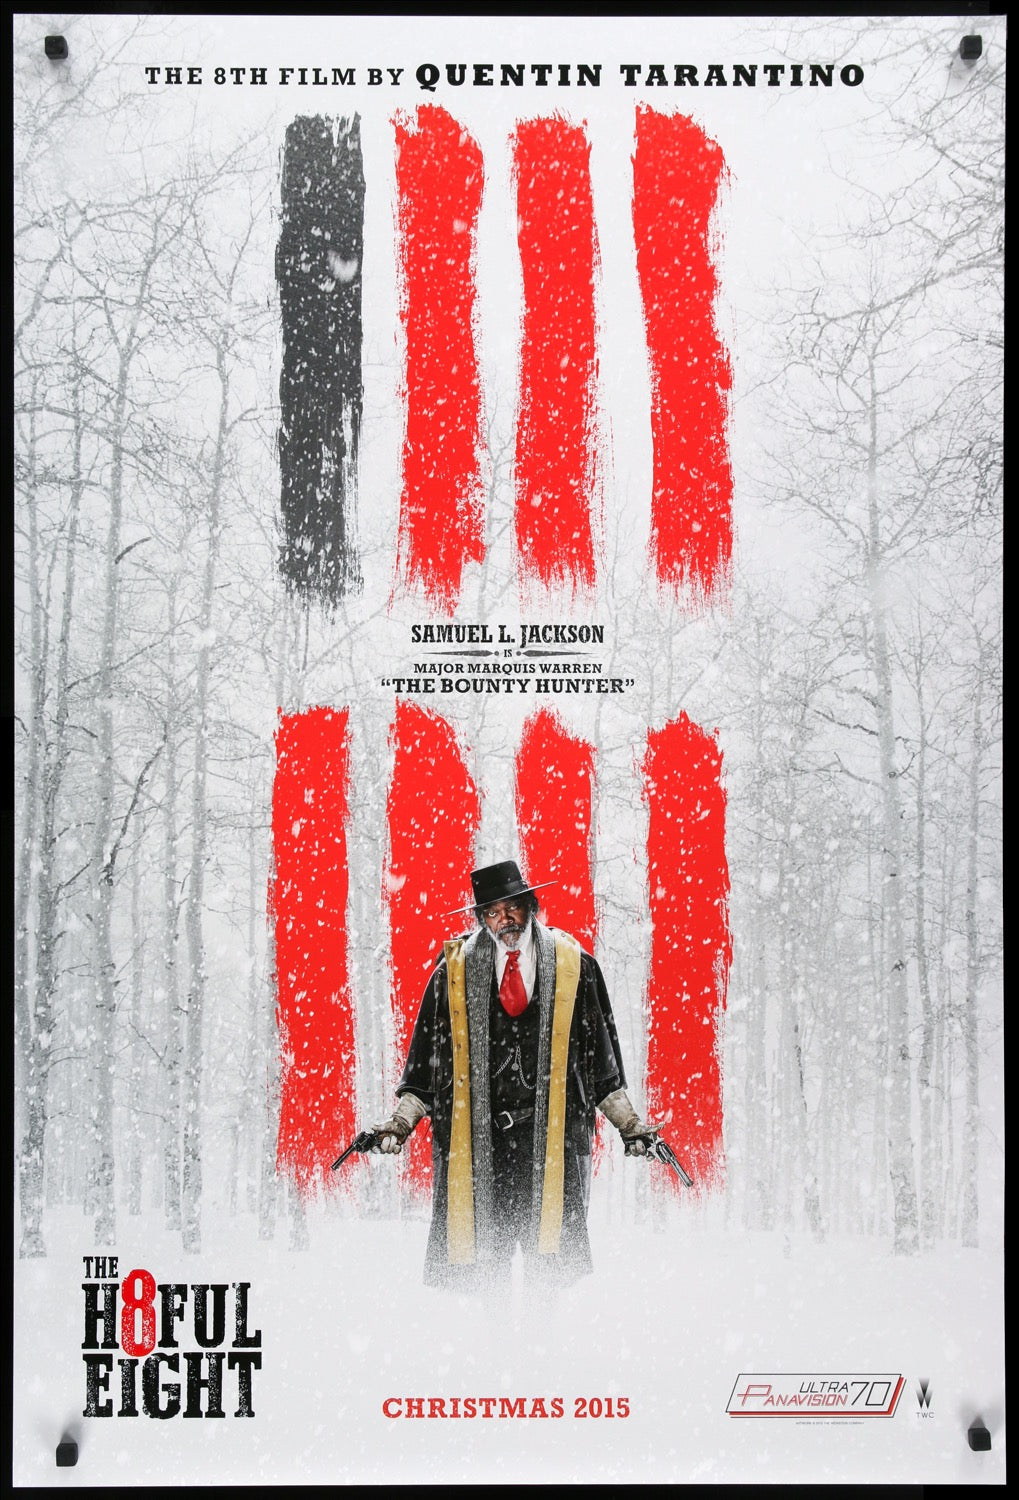 Hateful Eight (2015) original movie poster for sale at Original Film Art